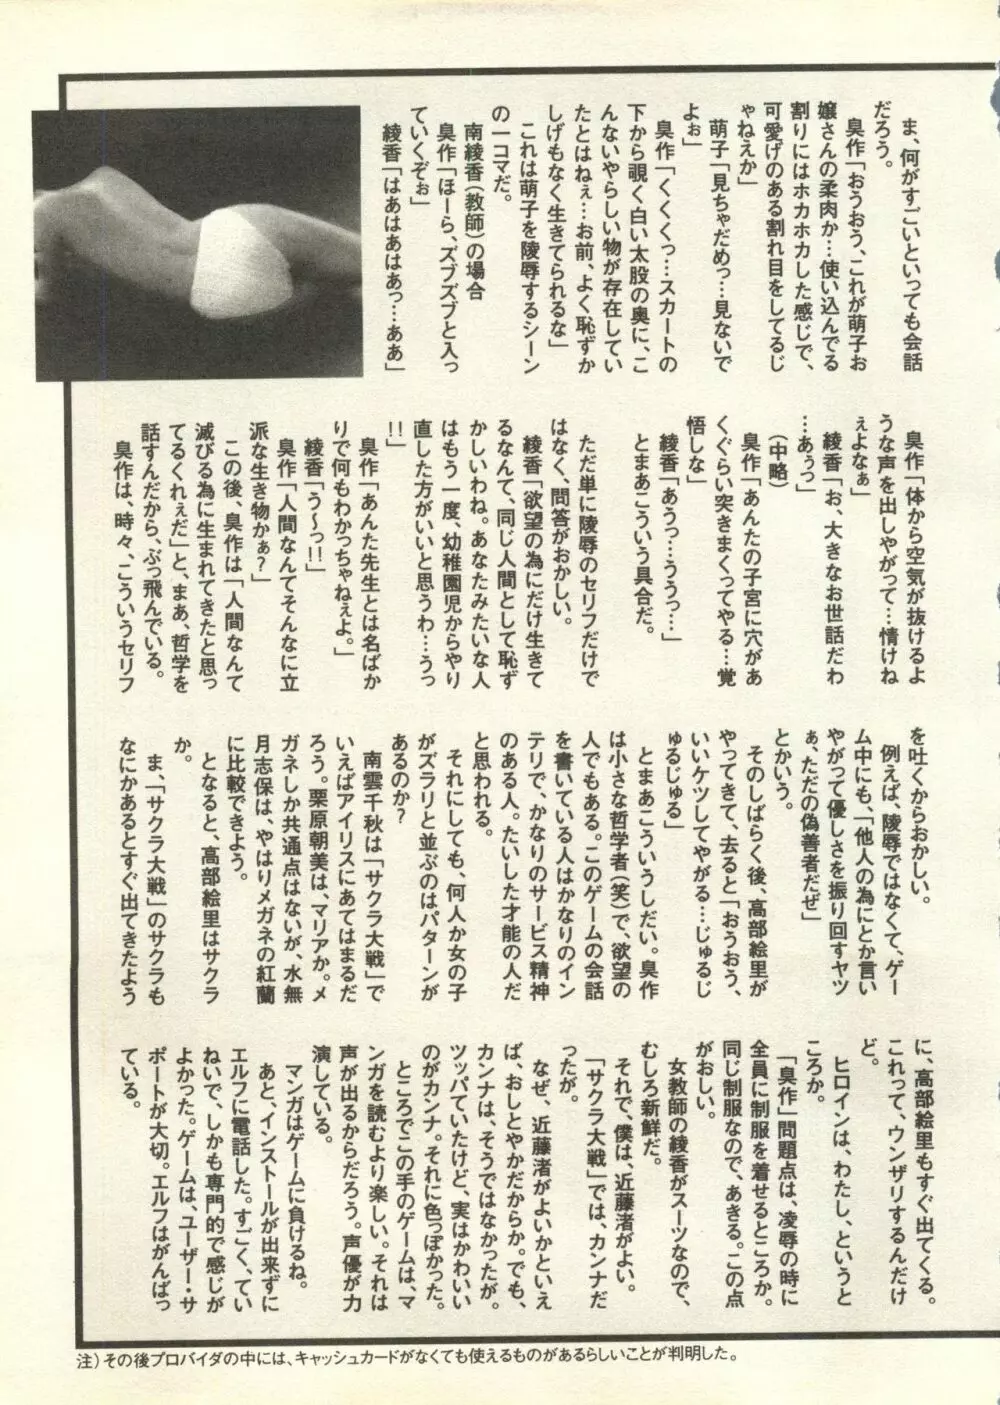 パイク Pai.kuu 1998 July vol.11 文月 254ページ